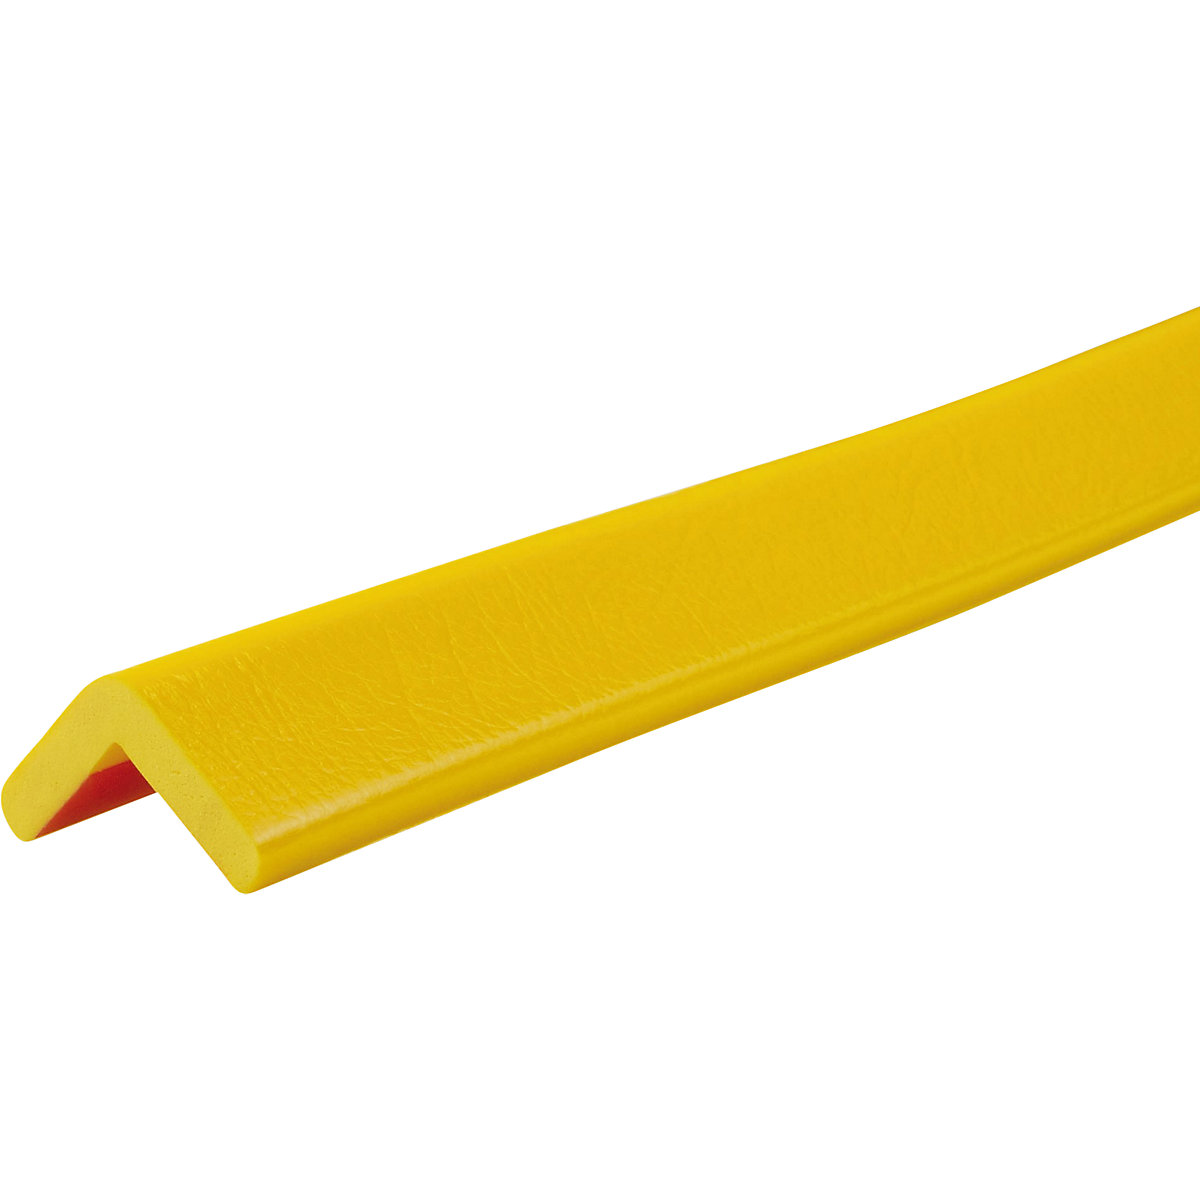 Proteção de cantos Knuffi® – SHG, tipo H, unidade de 1 m, amarelo-19